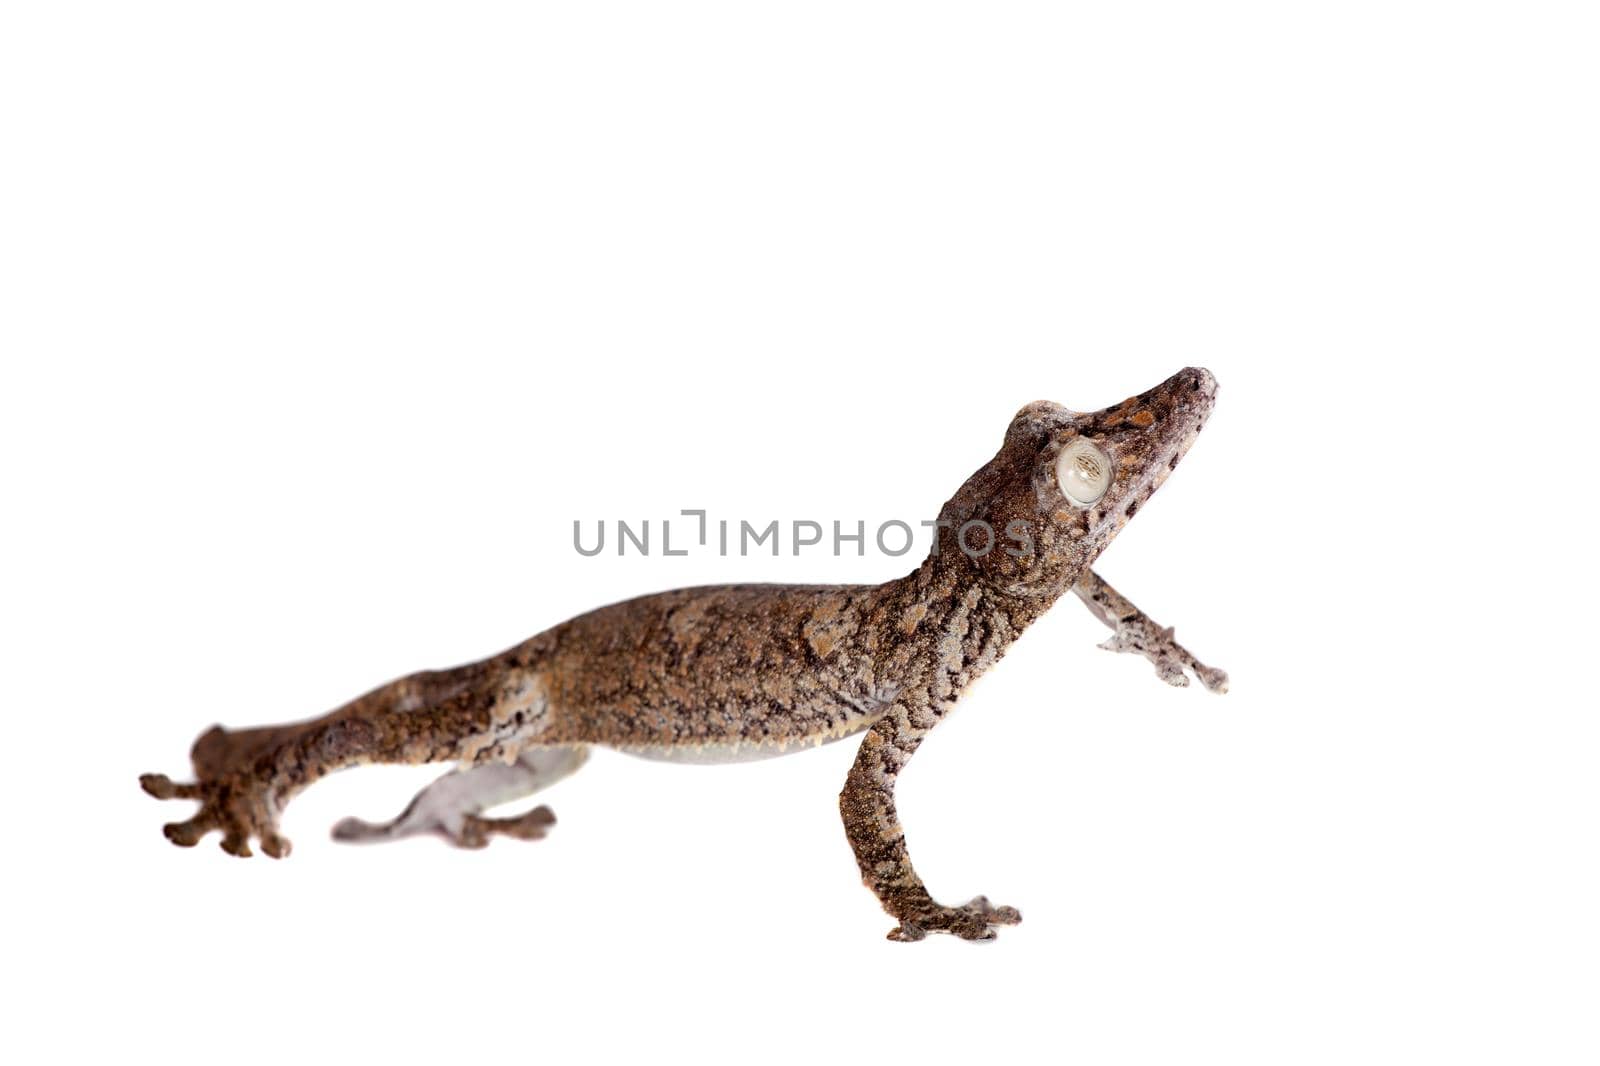 Giant leaf tailed gecko, Uroplatus giganteus, isolated on white background